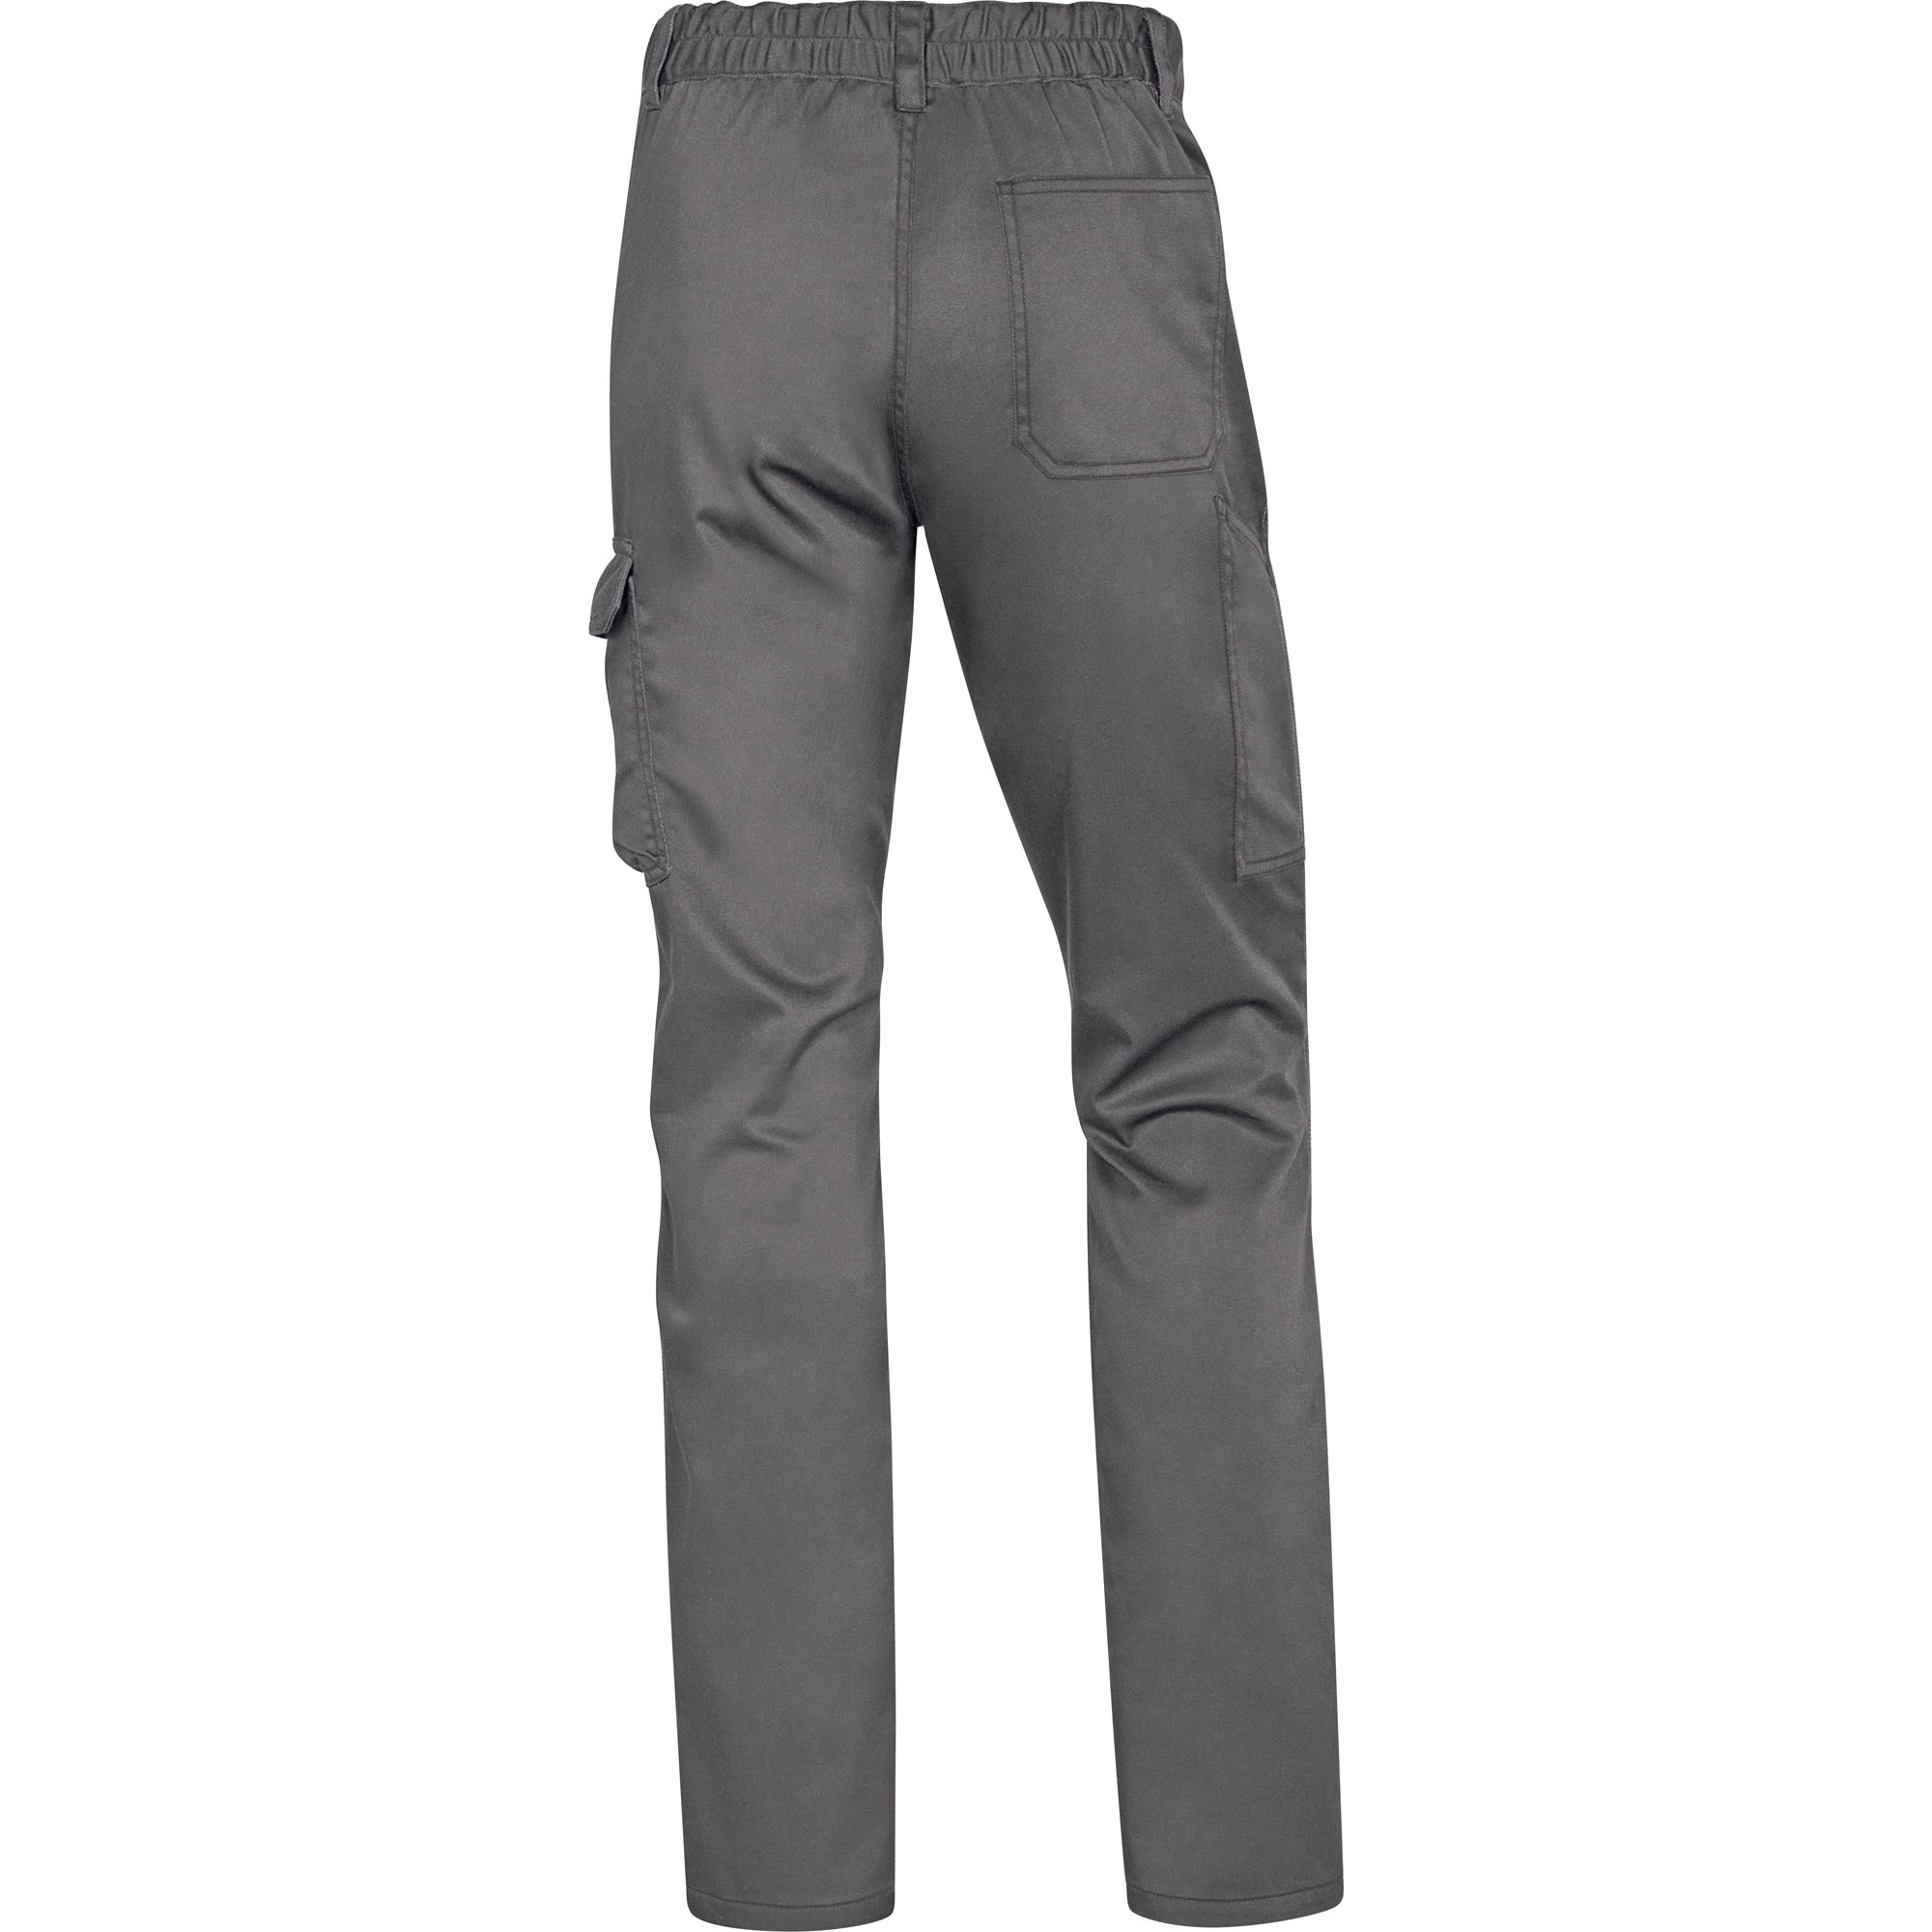 deltaplus-pantalone-lavoro-panostrpa-tg-xl-grigio-nero